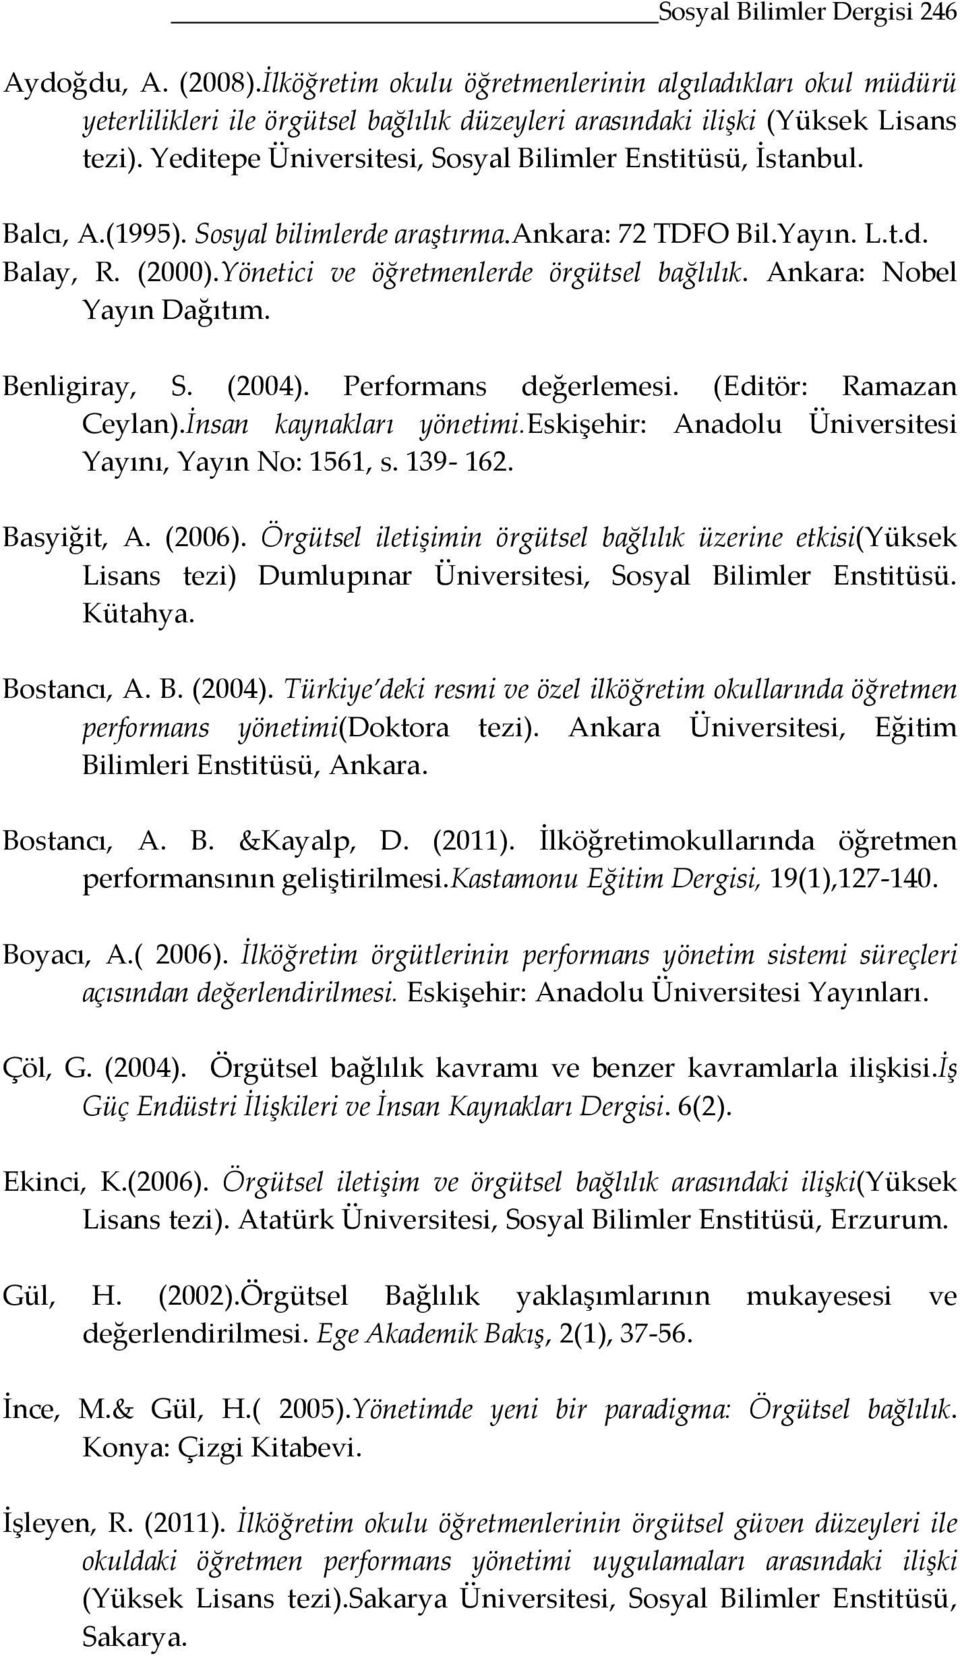 Ankara: Nobel Yayın Dağıtım. Benligiray, S. (2004). değerlemesi. (Editör: Ramazan Ceylan).İnsan kaynakları yönetimi.eskişehir: Anadolu Üniversitesi Yayını, Yayın No: 1561, s. 139-162. Basyiğit, A.